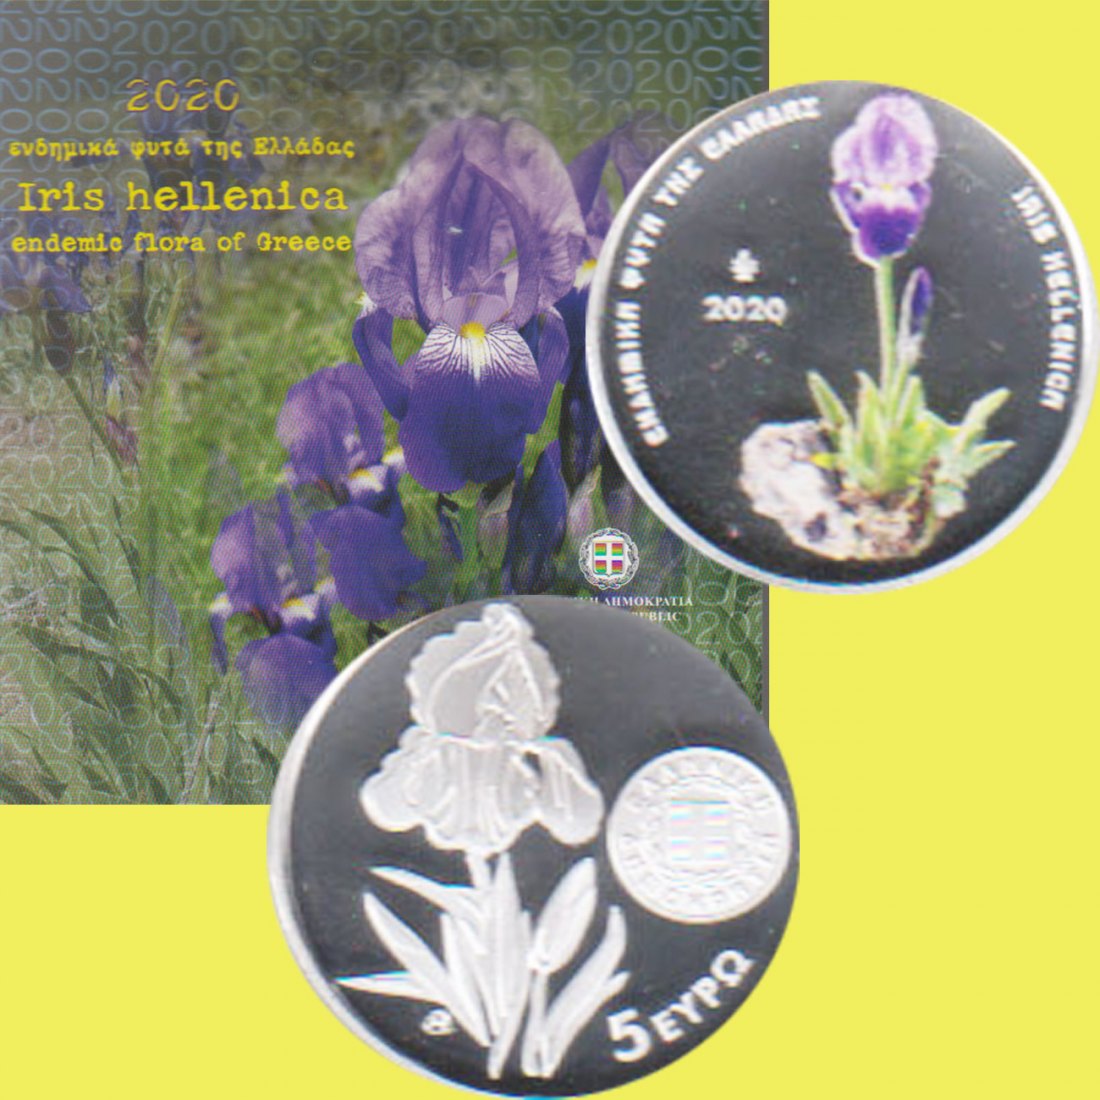  Offiz 5€ Farb-Silbermünze Griechenl. *Flora - Iris* 2020 *PP* nur 5.000St   